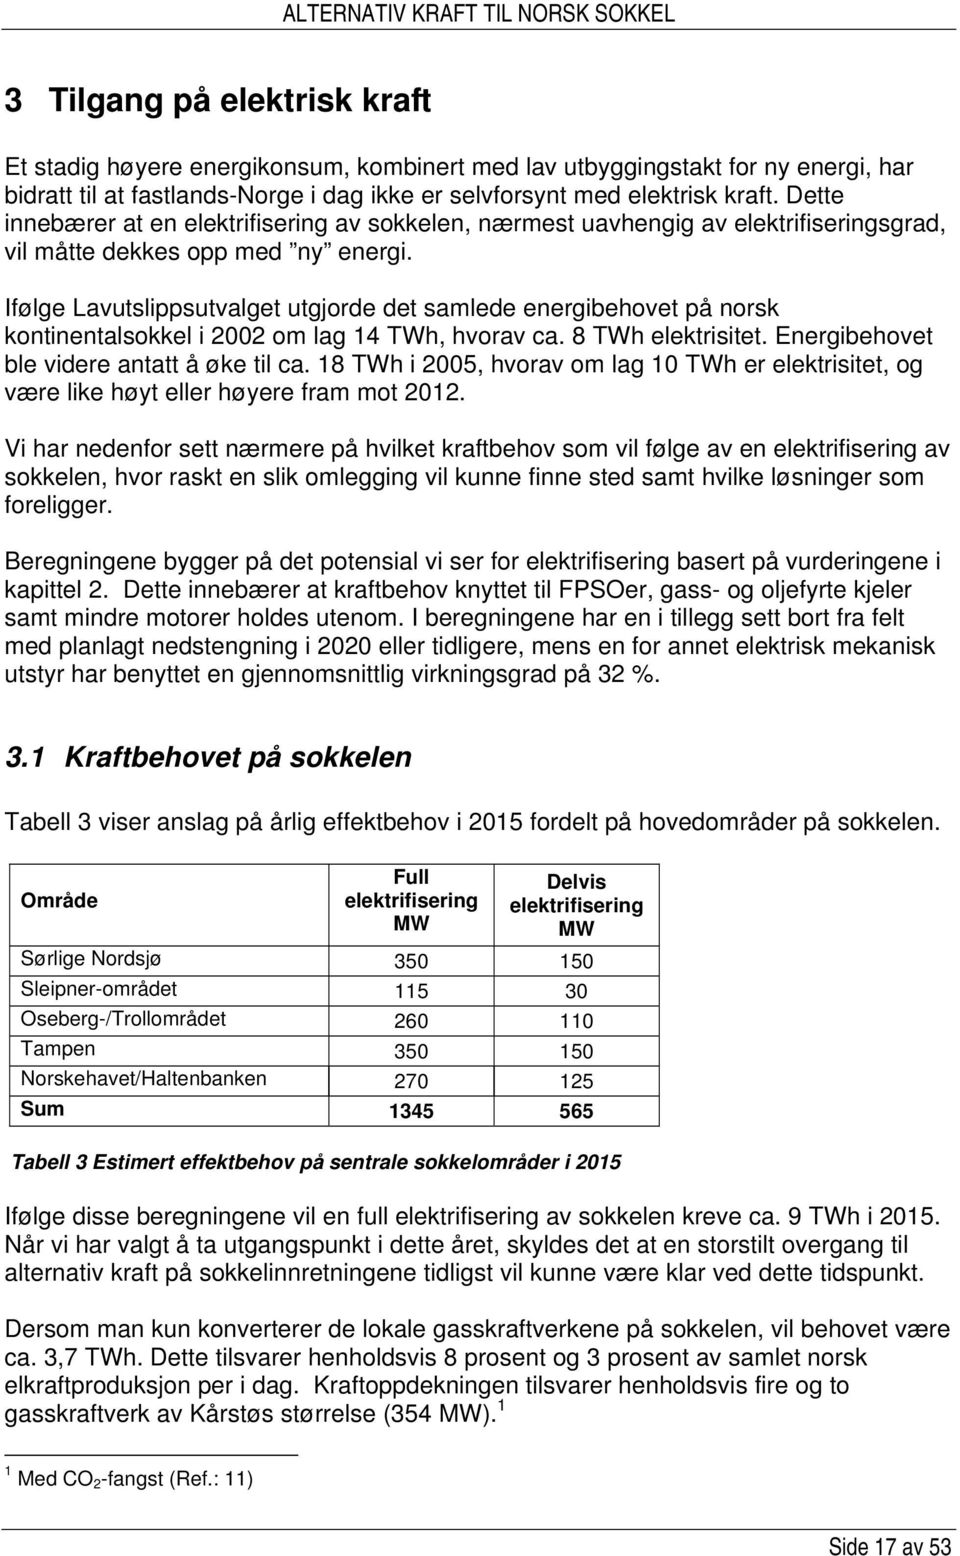 Ifølge Lavutslippsutvalget utgjorde det samlede energibehovet på norsk kontinentalsokkel i 2002 om lag 14 TWh, hvorav ca. 8 TWh elektrisitet. Energibehovet ble videre antatt å øke til ca.